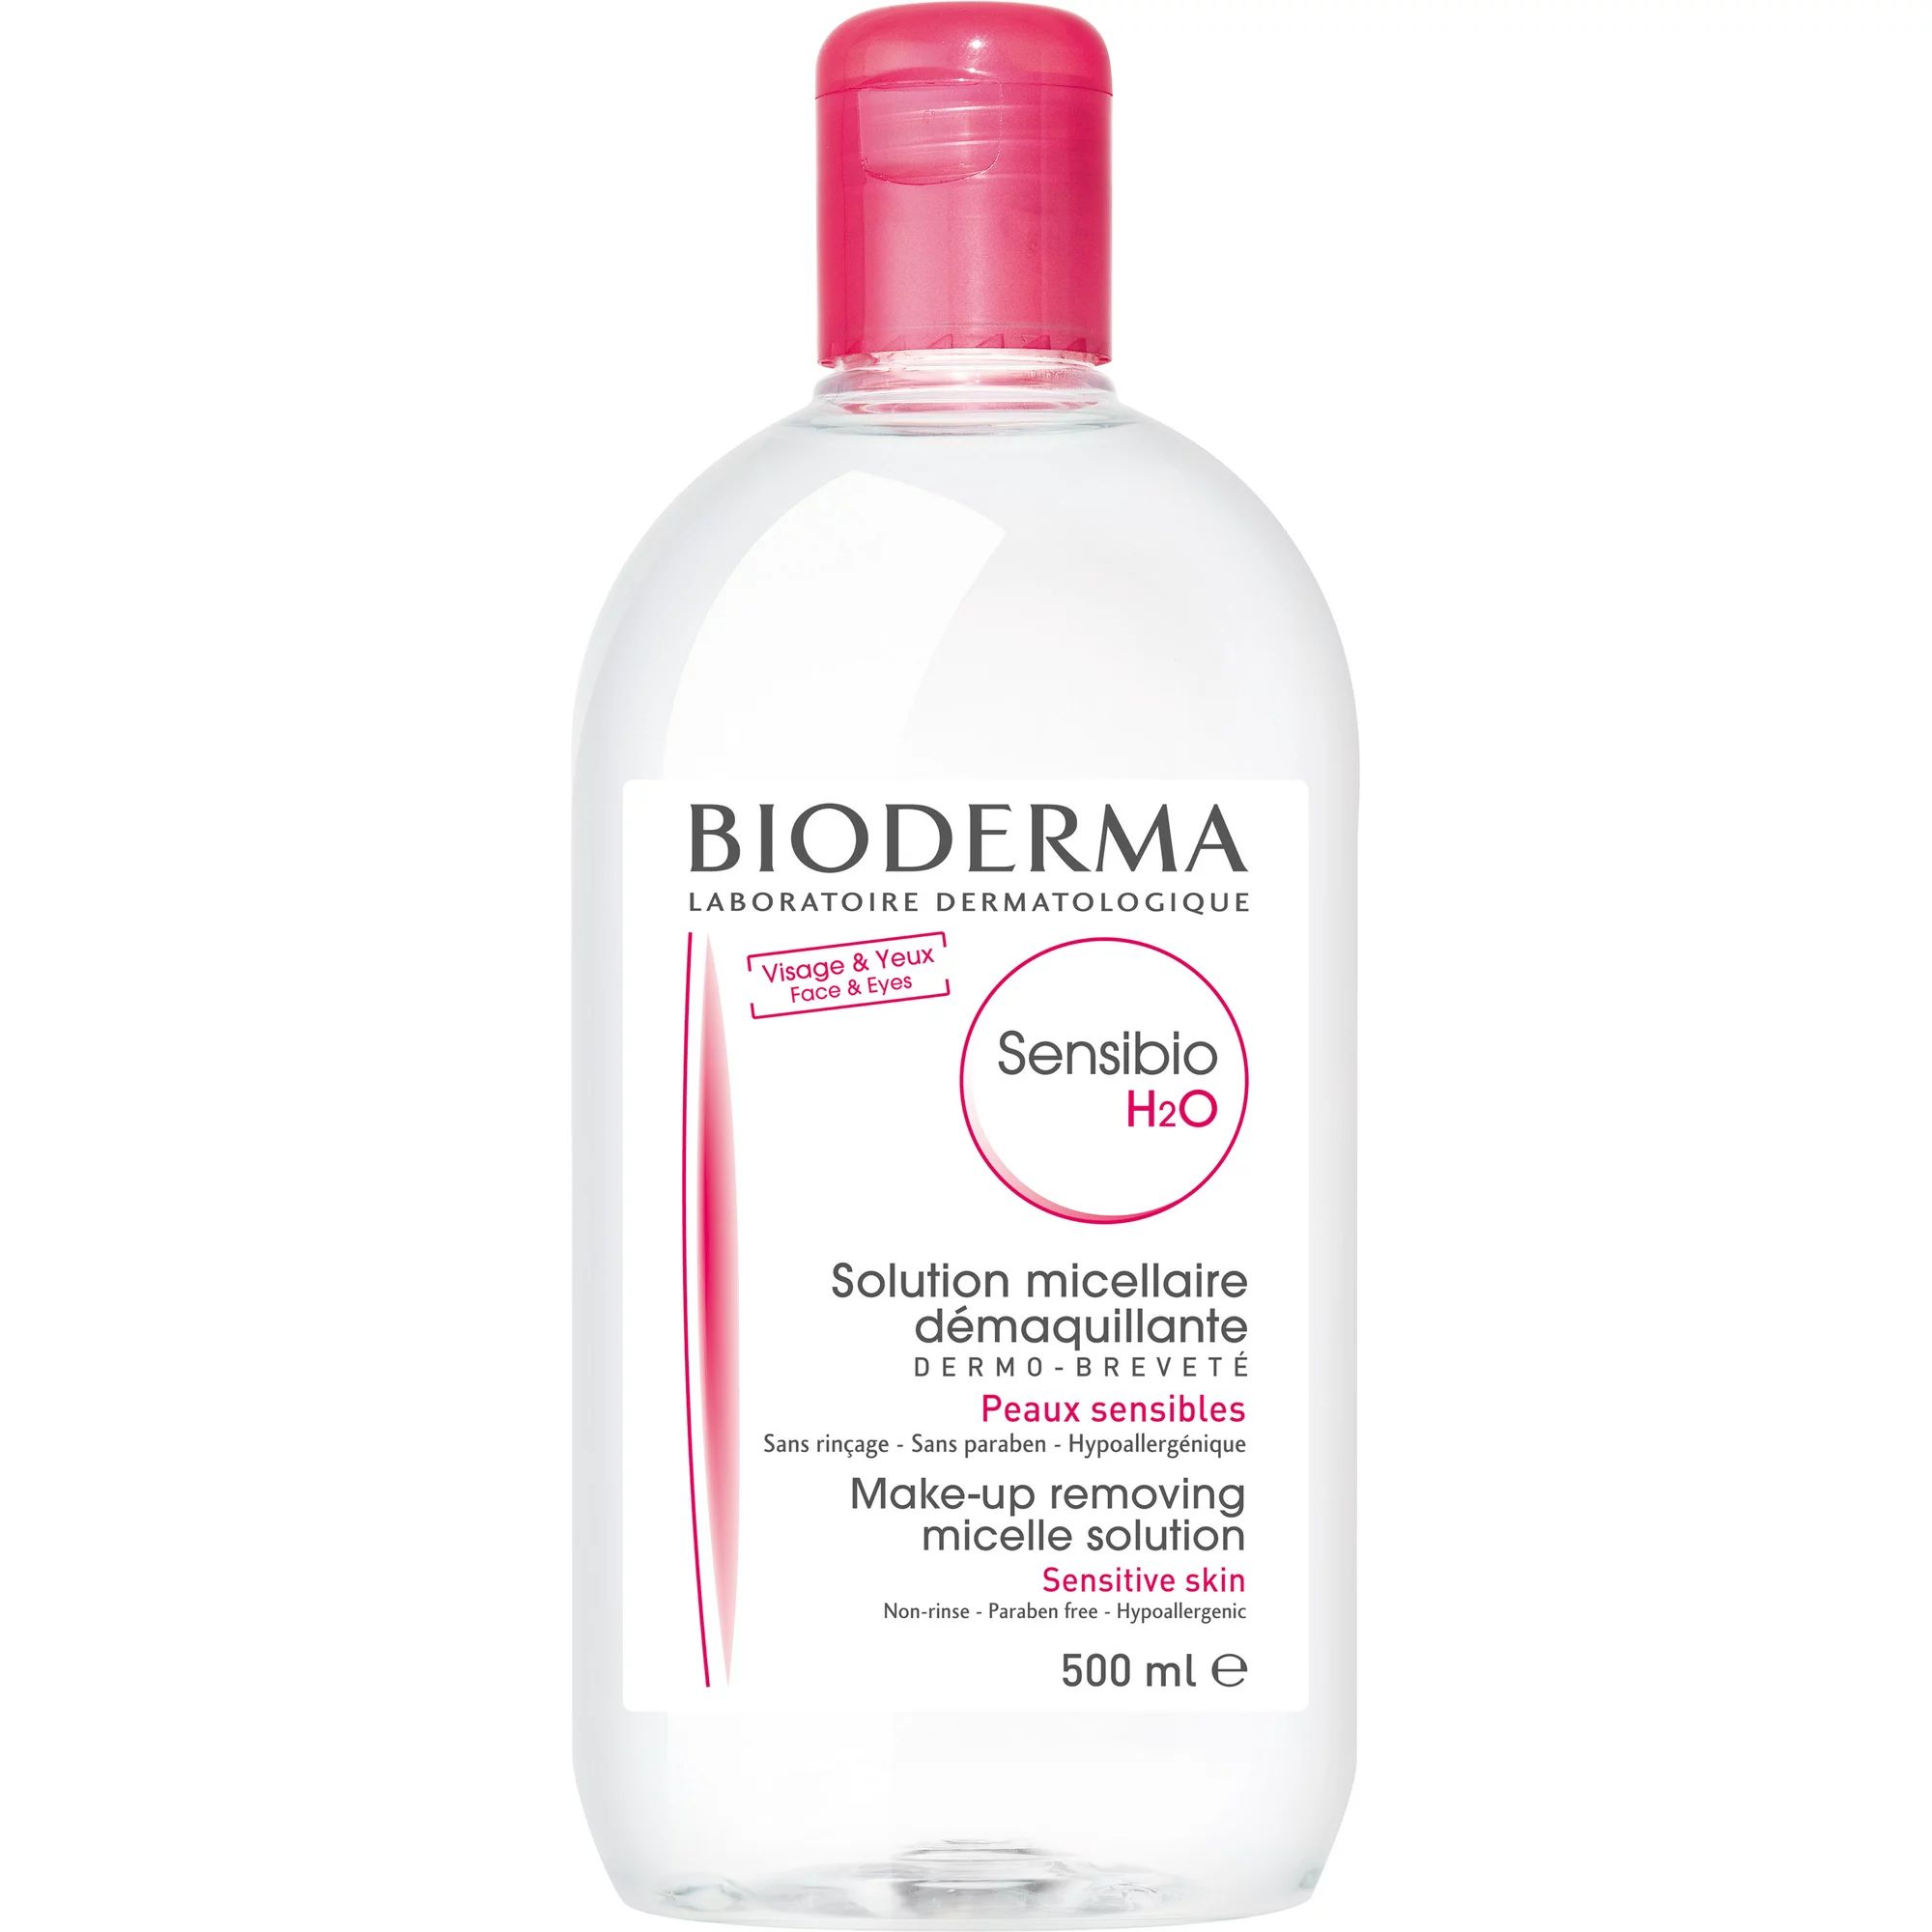 Bioderma - Sensibio, H2O Soothing Micellar Cleansing Water and Makeup Removing Solution for Sensi... | Walmart (US)